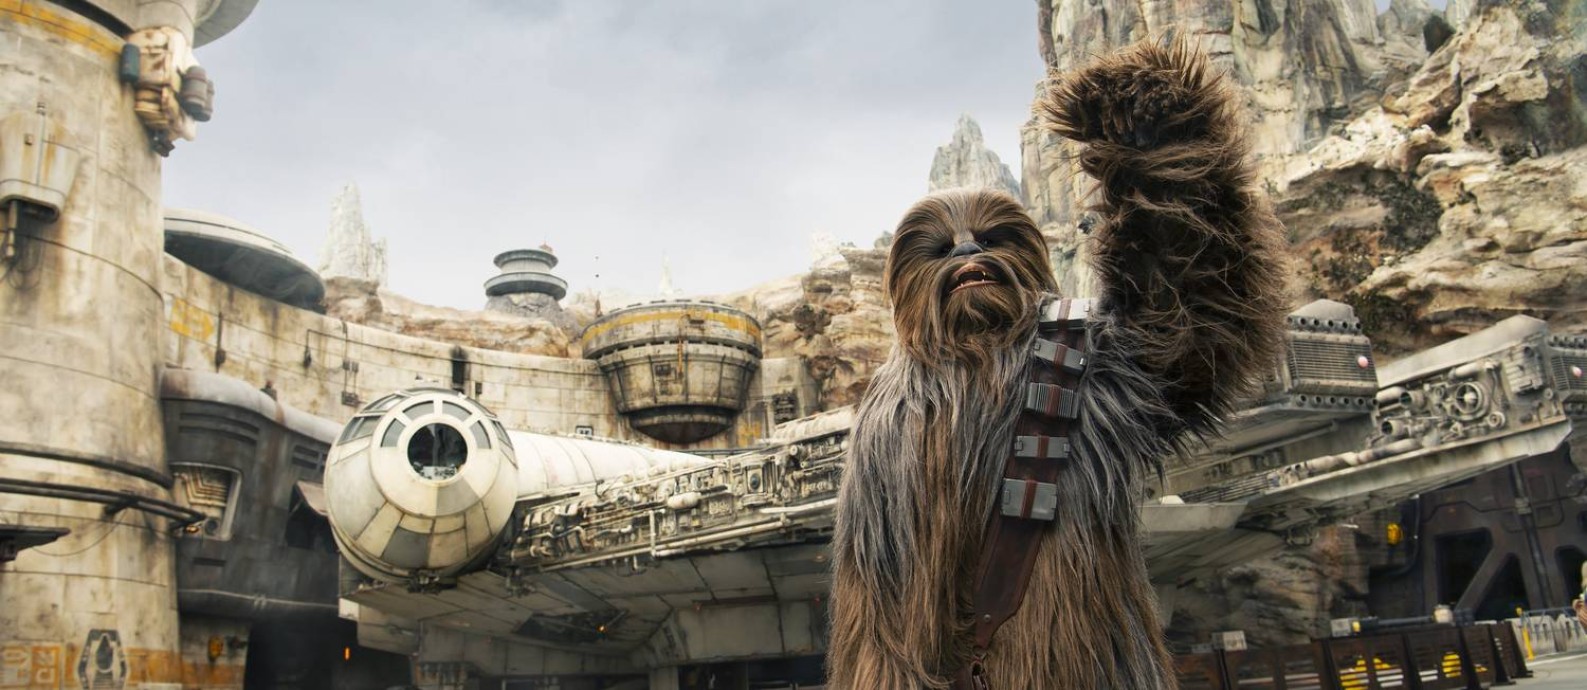 O personagem Chewbacca recebe os visitantes na Star Wars Galaxy's Edge, área inspirada nos filmes da fraquia, no parque Hollywood Studios, no Walt Disney World, na Flórida Foto: Divulgação